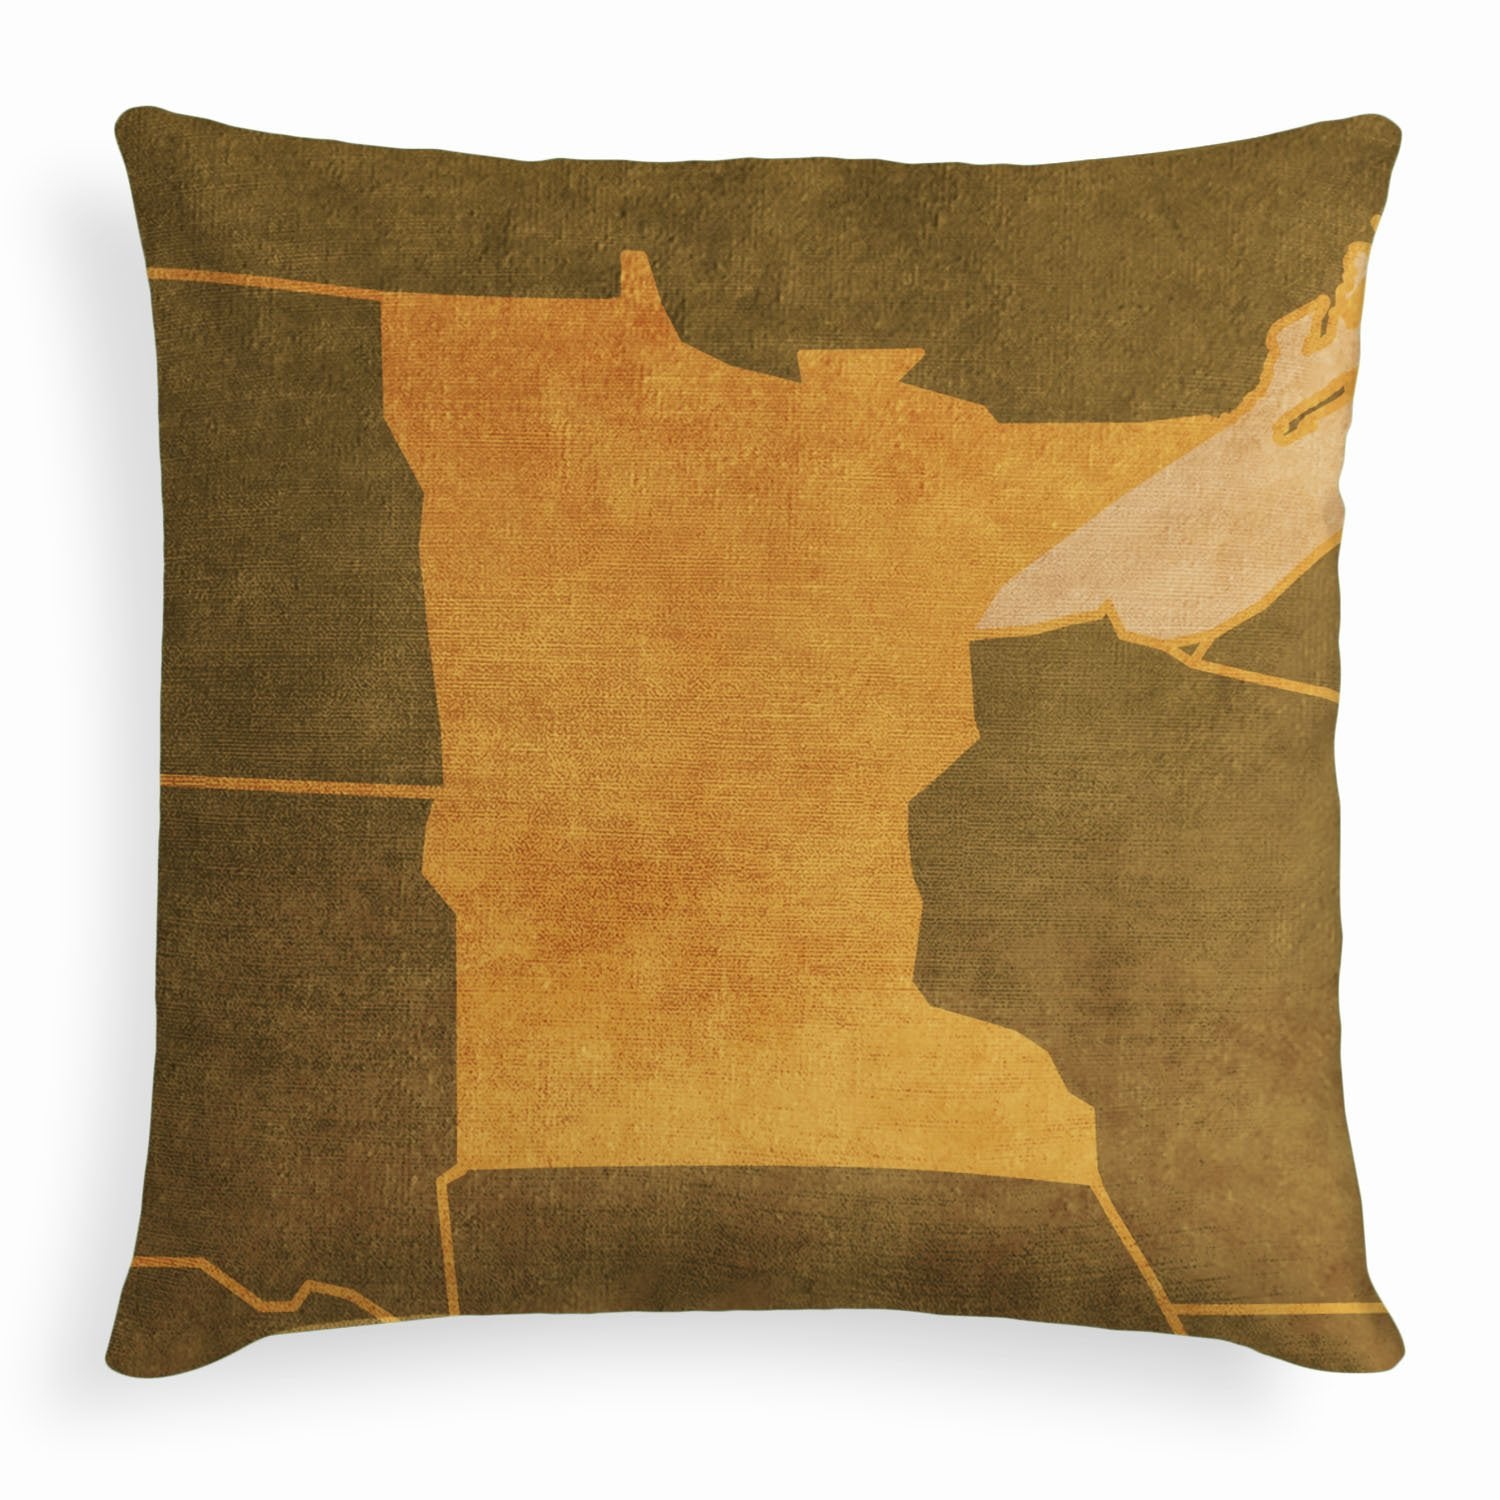 Minnesota Square Pillow - Velvet -  - Knotty Tie Co.